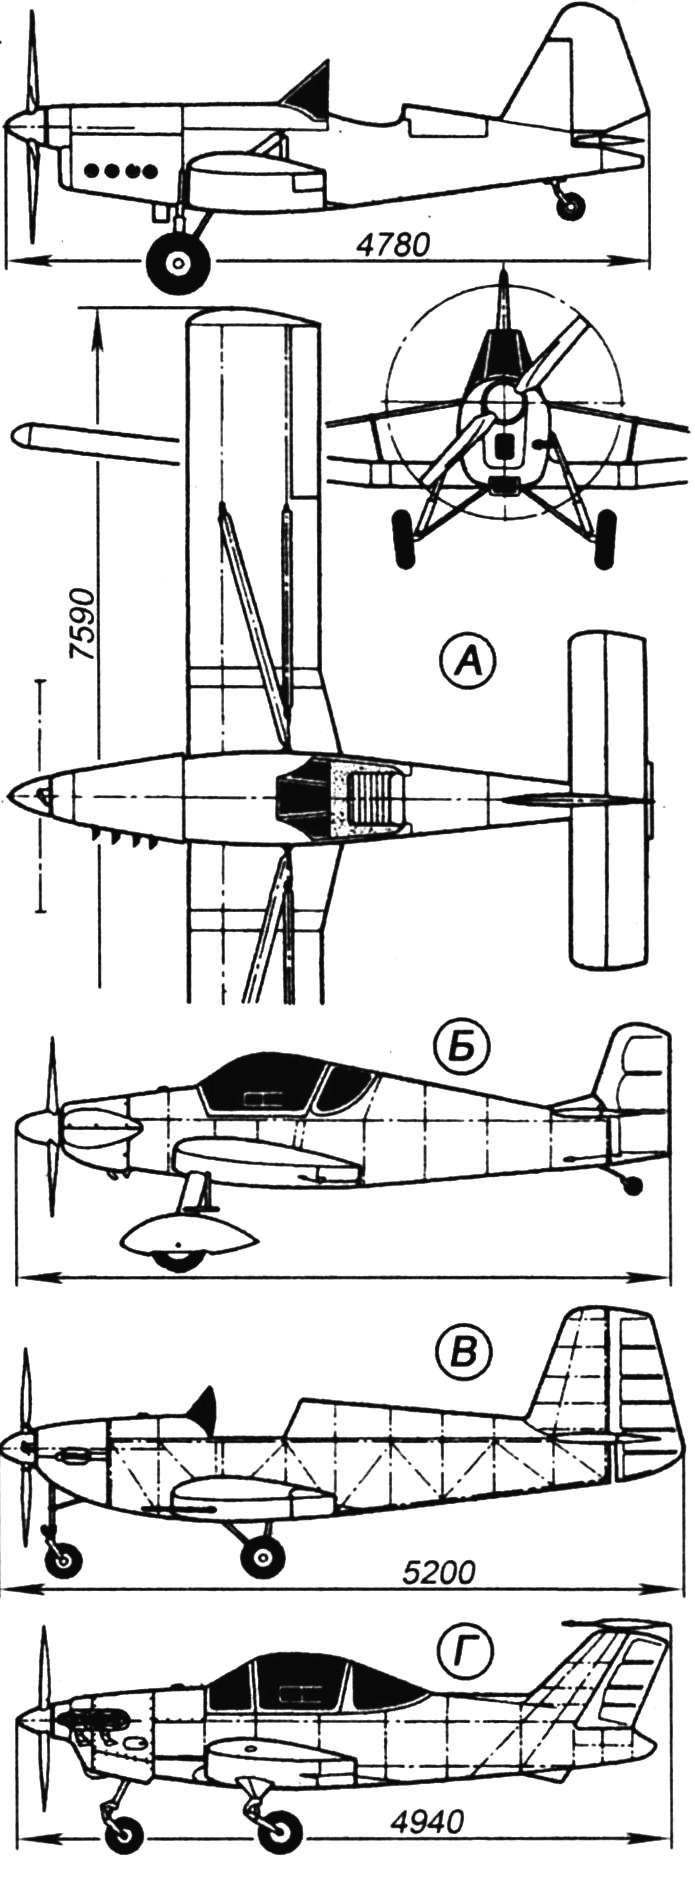 Компоновка самолёта «Фольксплан» VР-1 американского конструктора Эванса